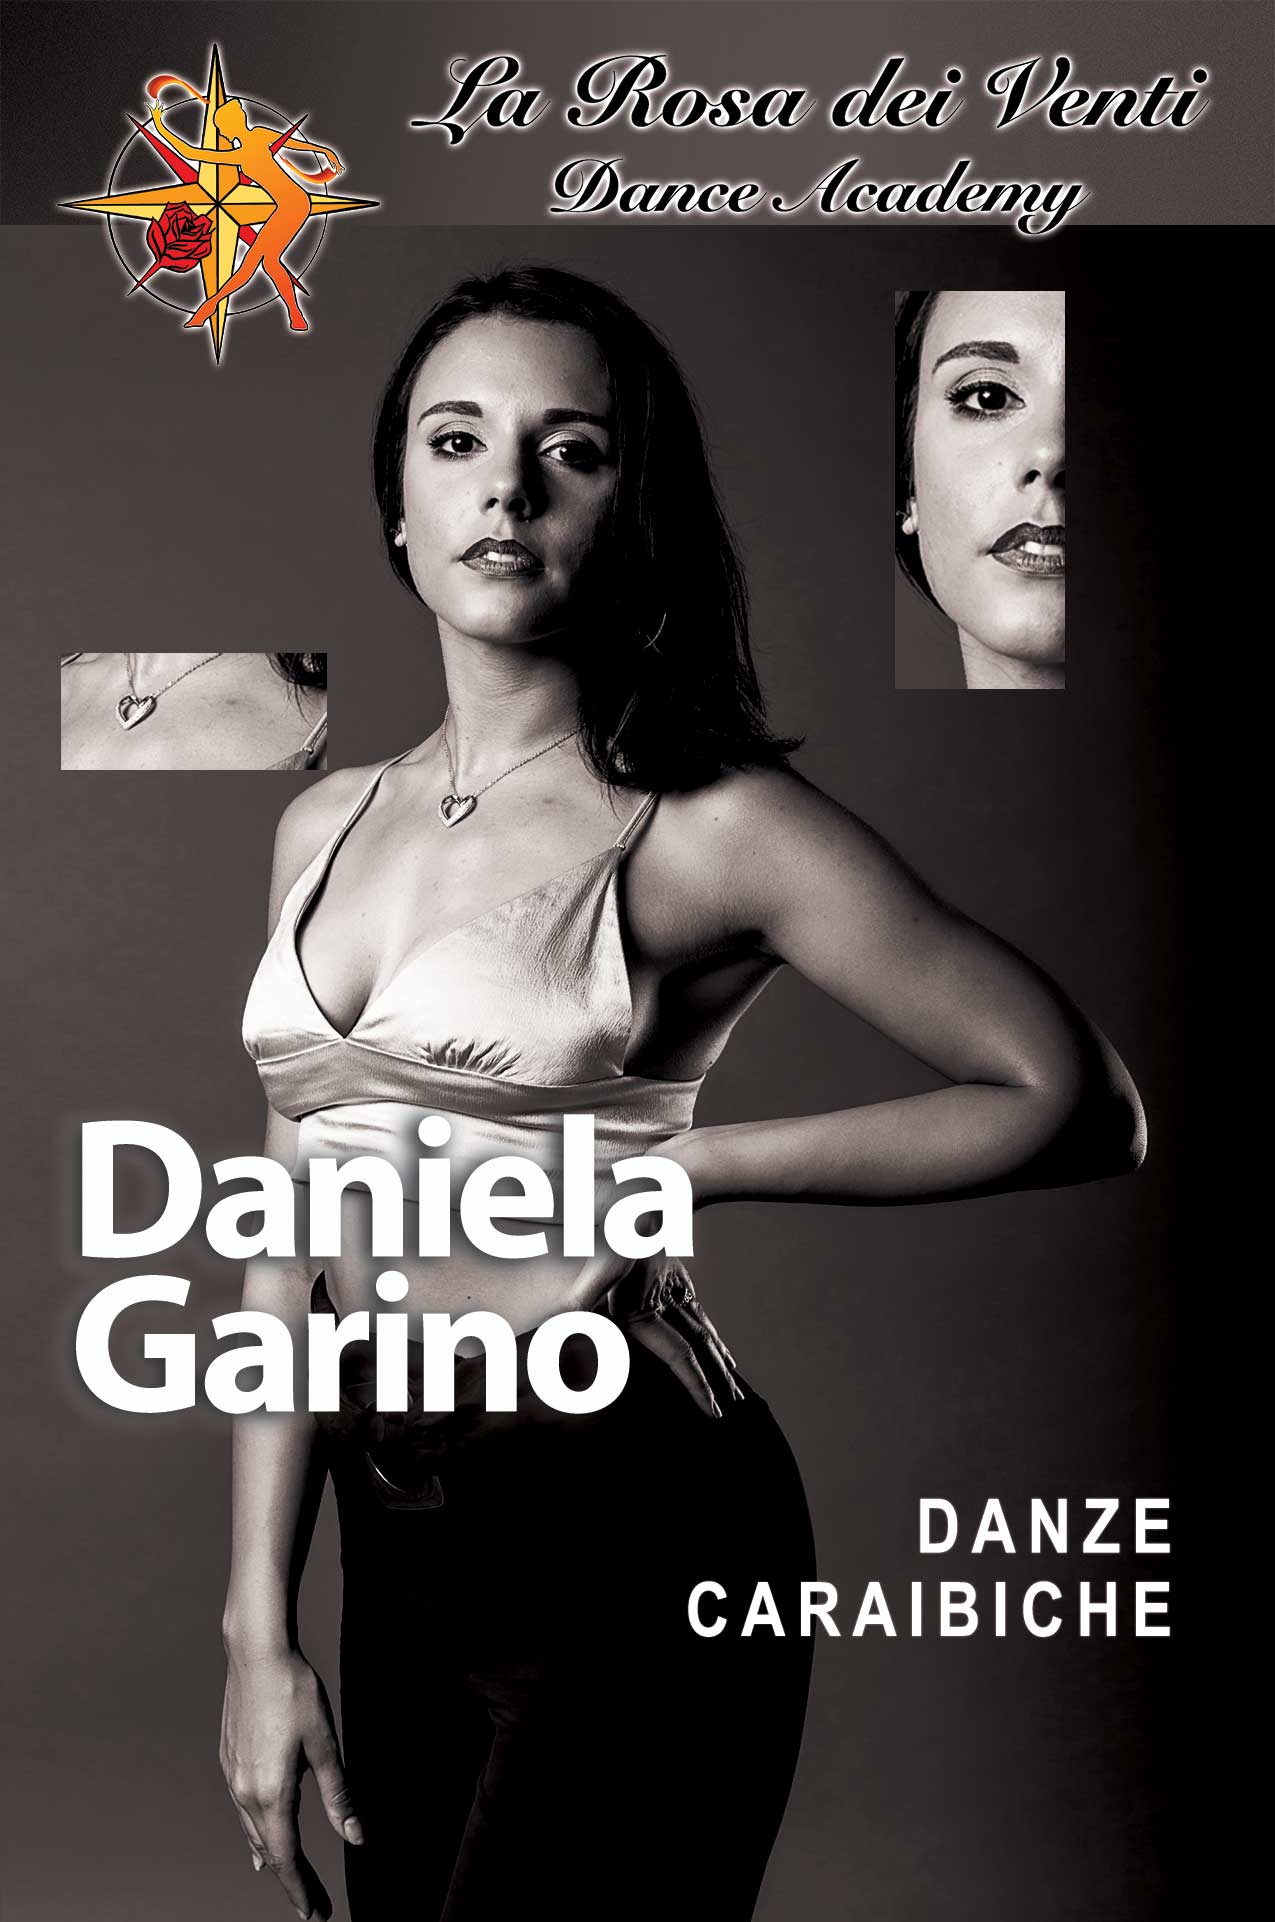 Daniela Garino Danze Caraibiche La Rosa dei Venti Dance Accademy